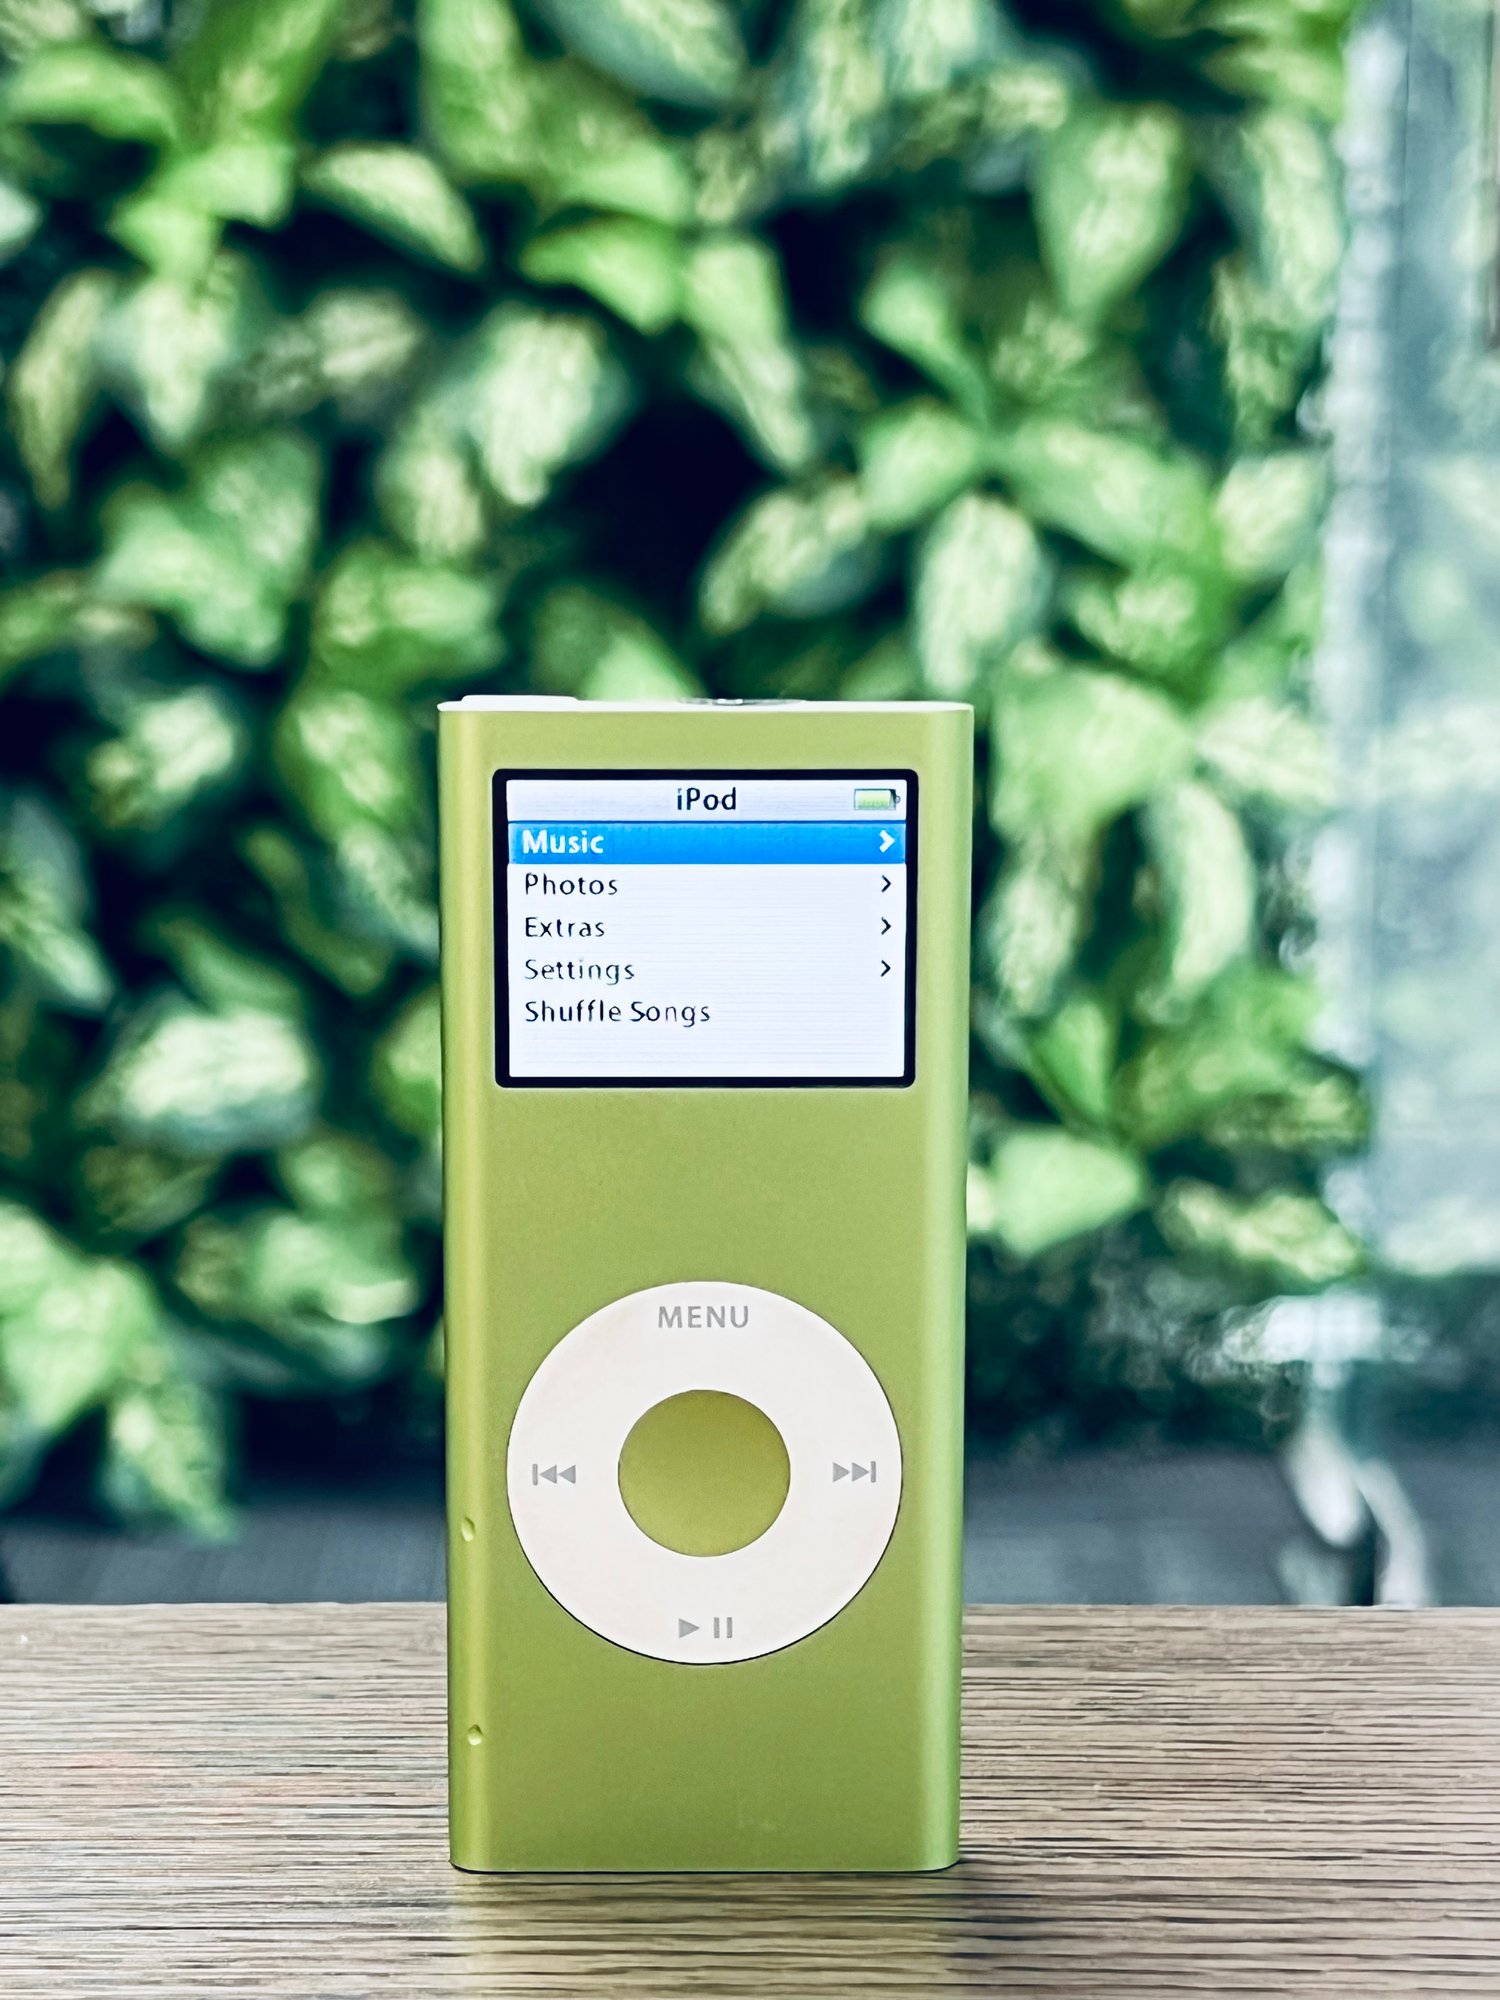 iPod Nano Gen 3